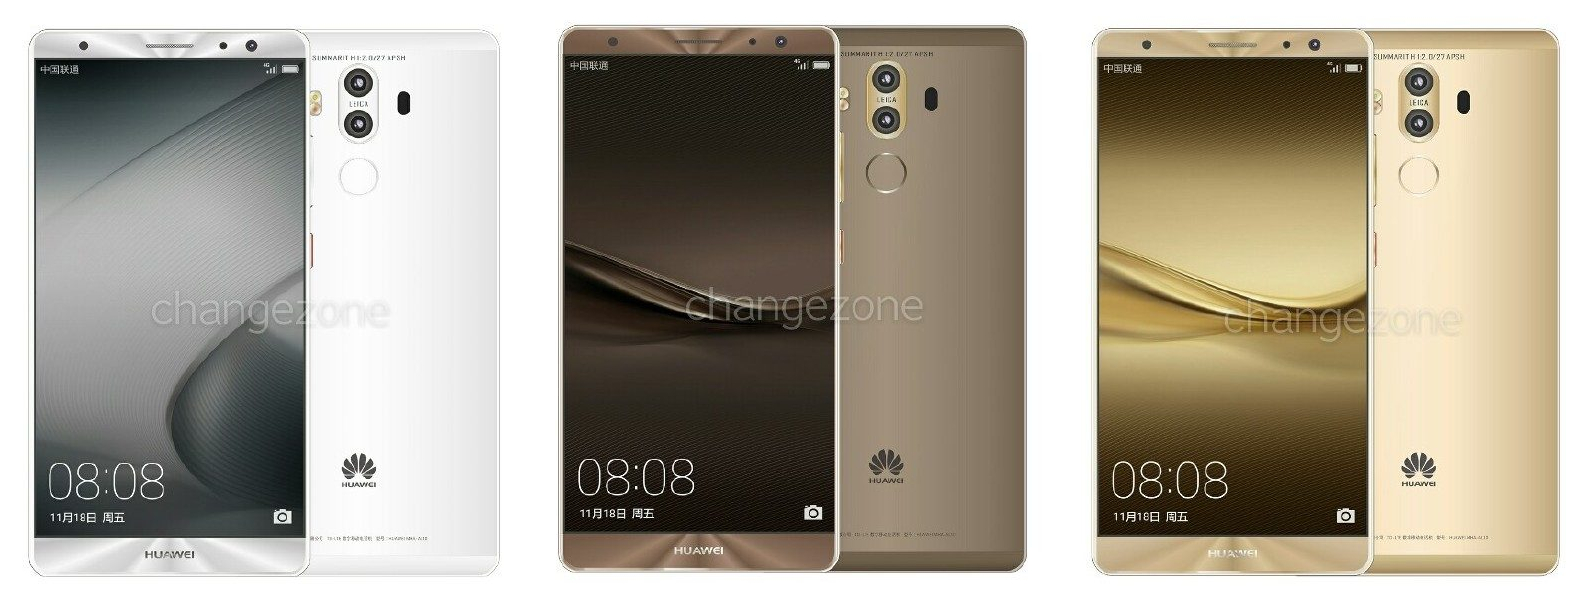 Huawei Mate 9 sẽ được bán ra với 3 phiên bản?